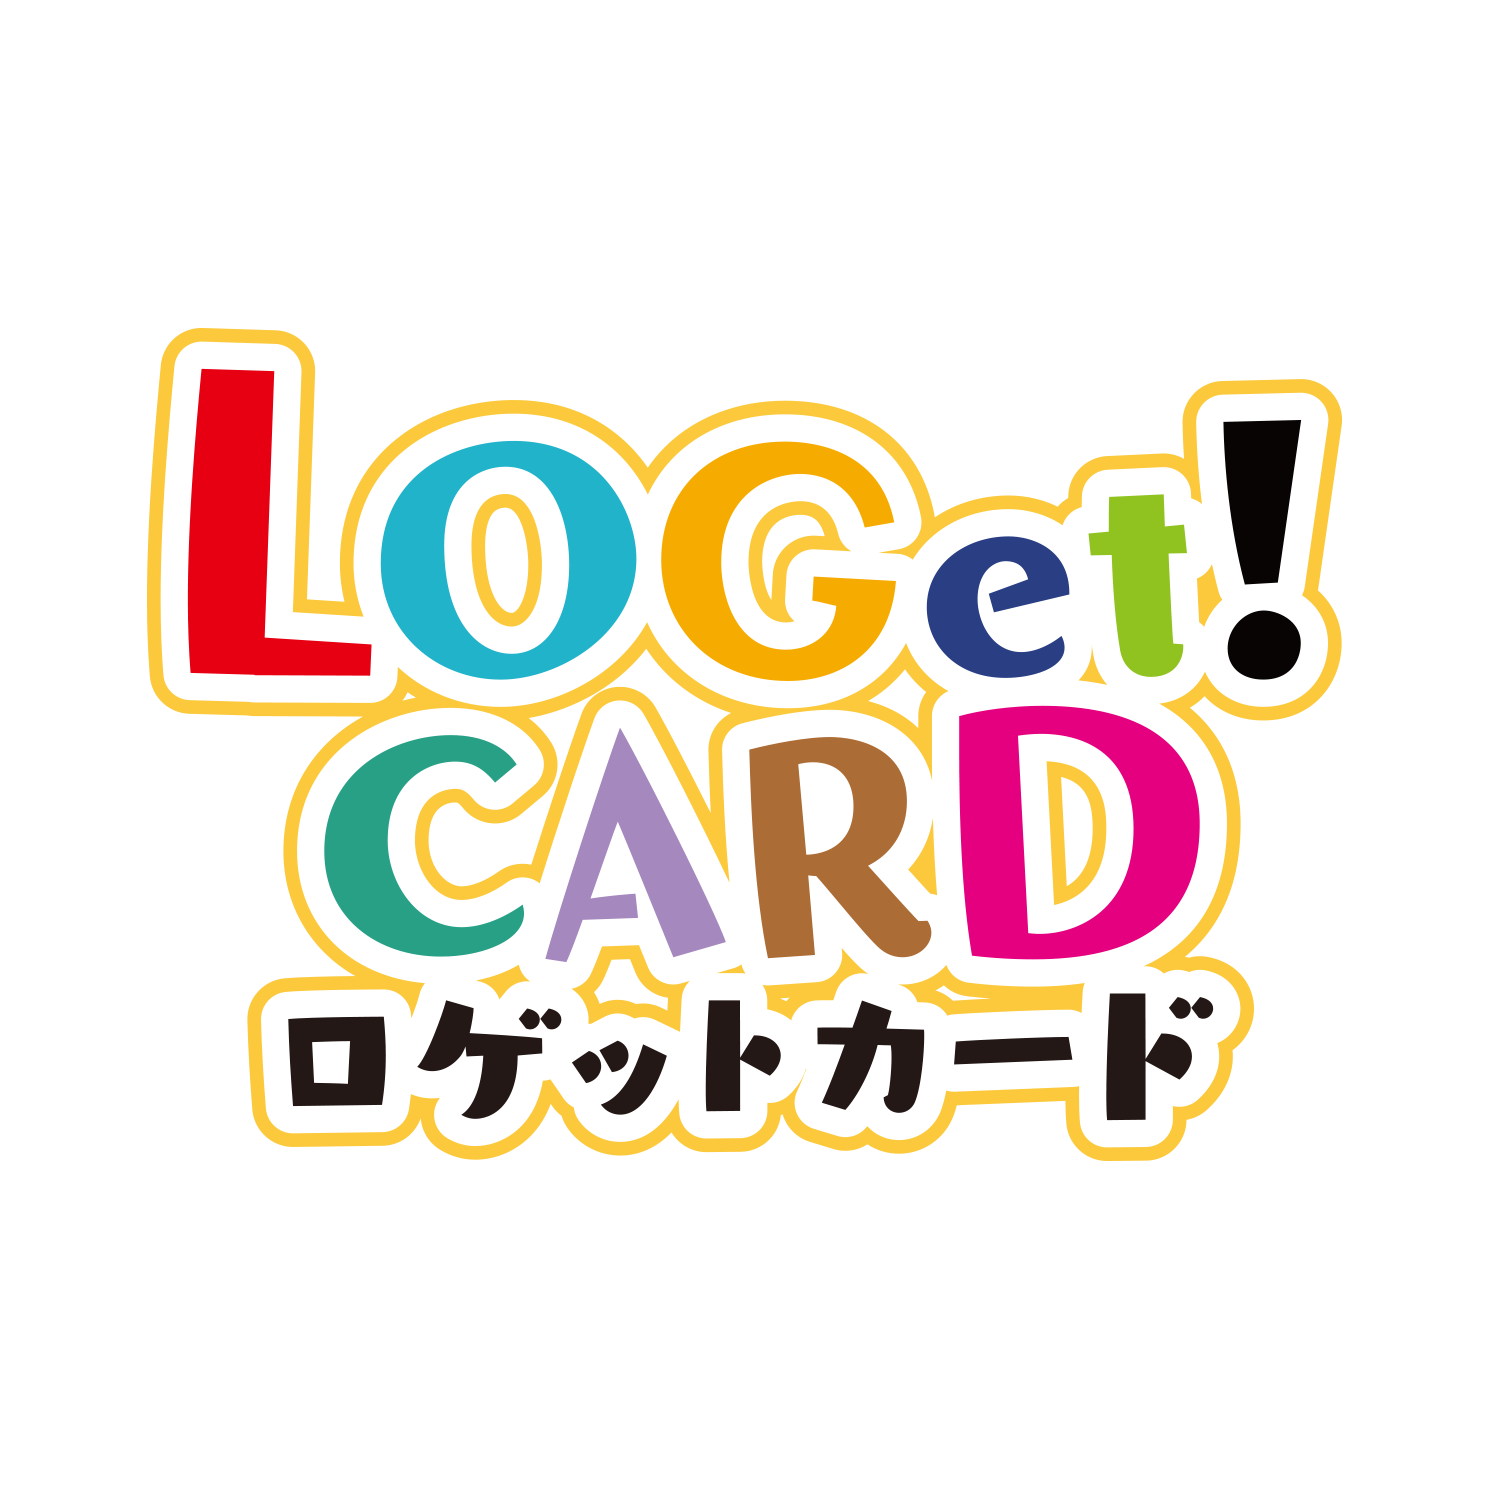 LOGet!CARD（ロゲットカード）」第４弾に私市醸造が登場！ - 私市醸造 